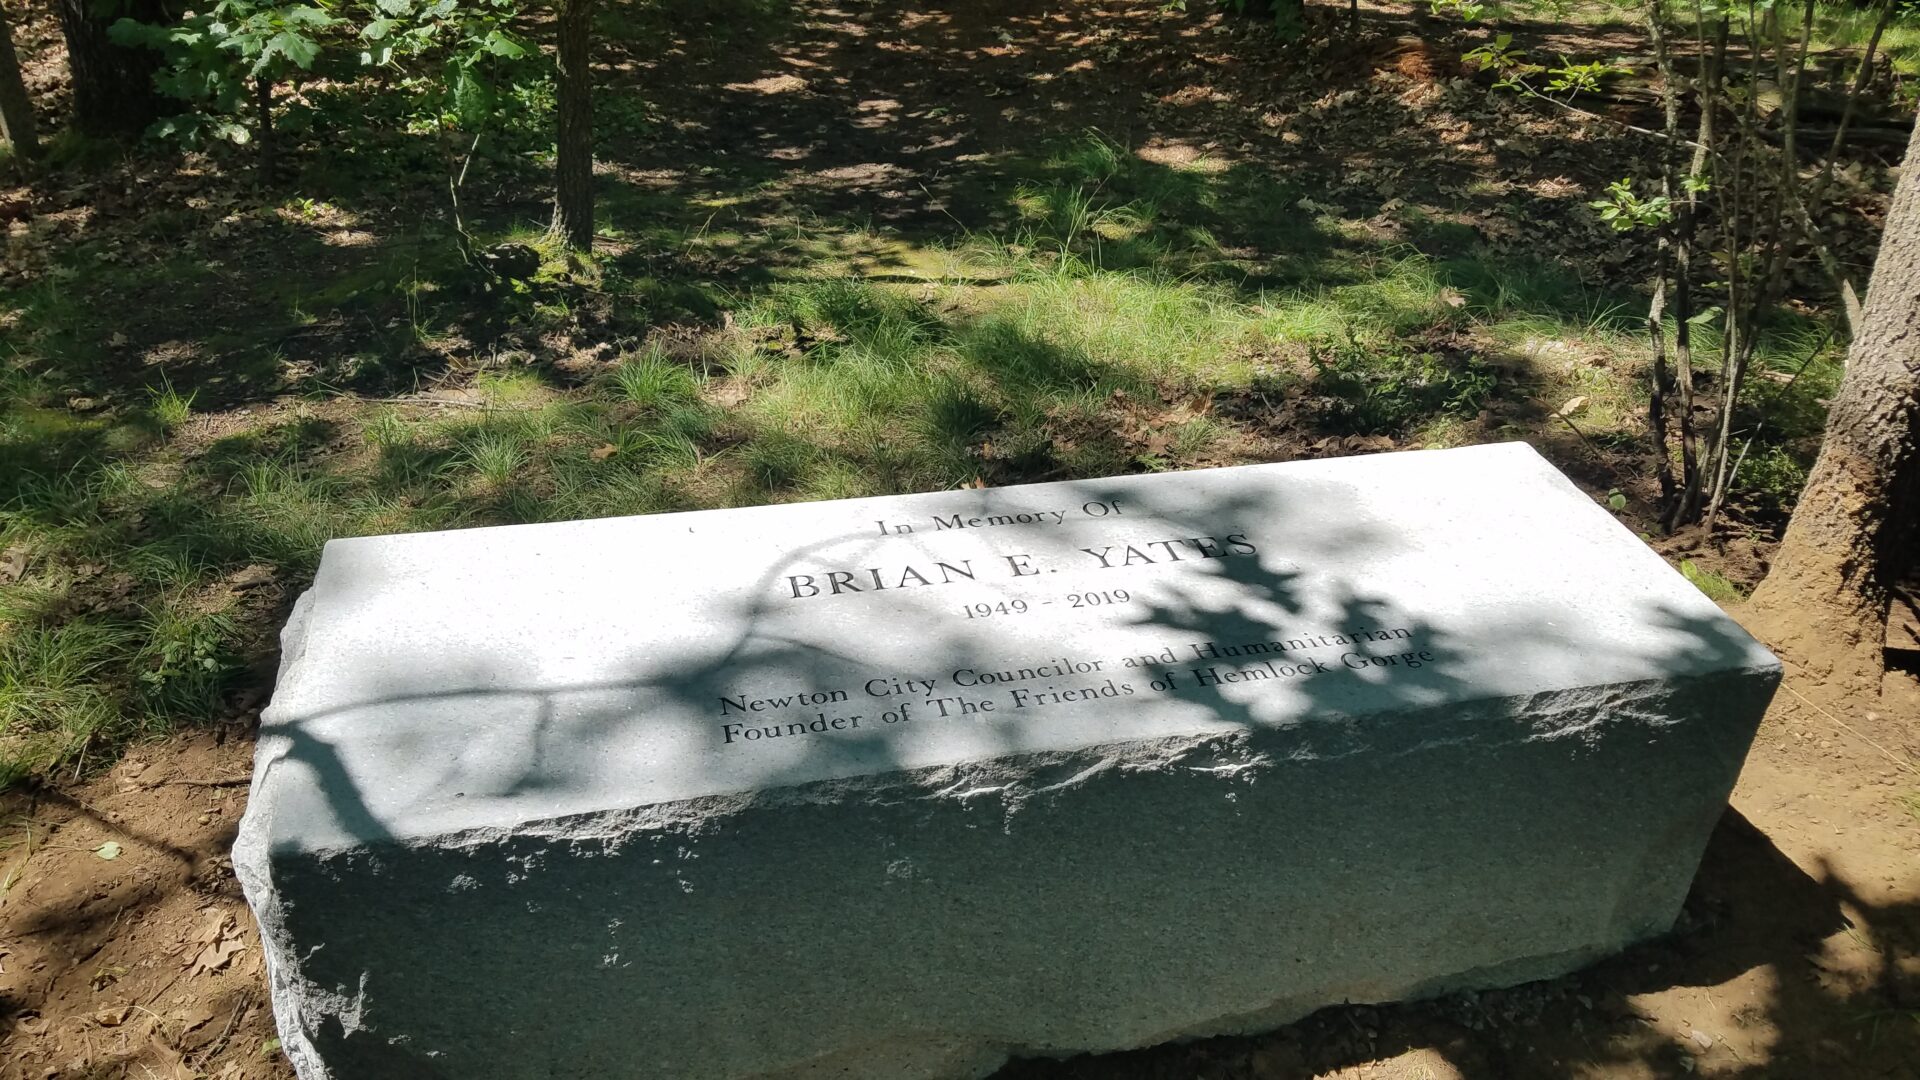 The Friends’ Brian Yates Memorial Dedication